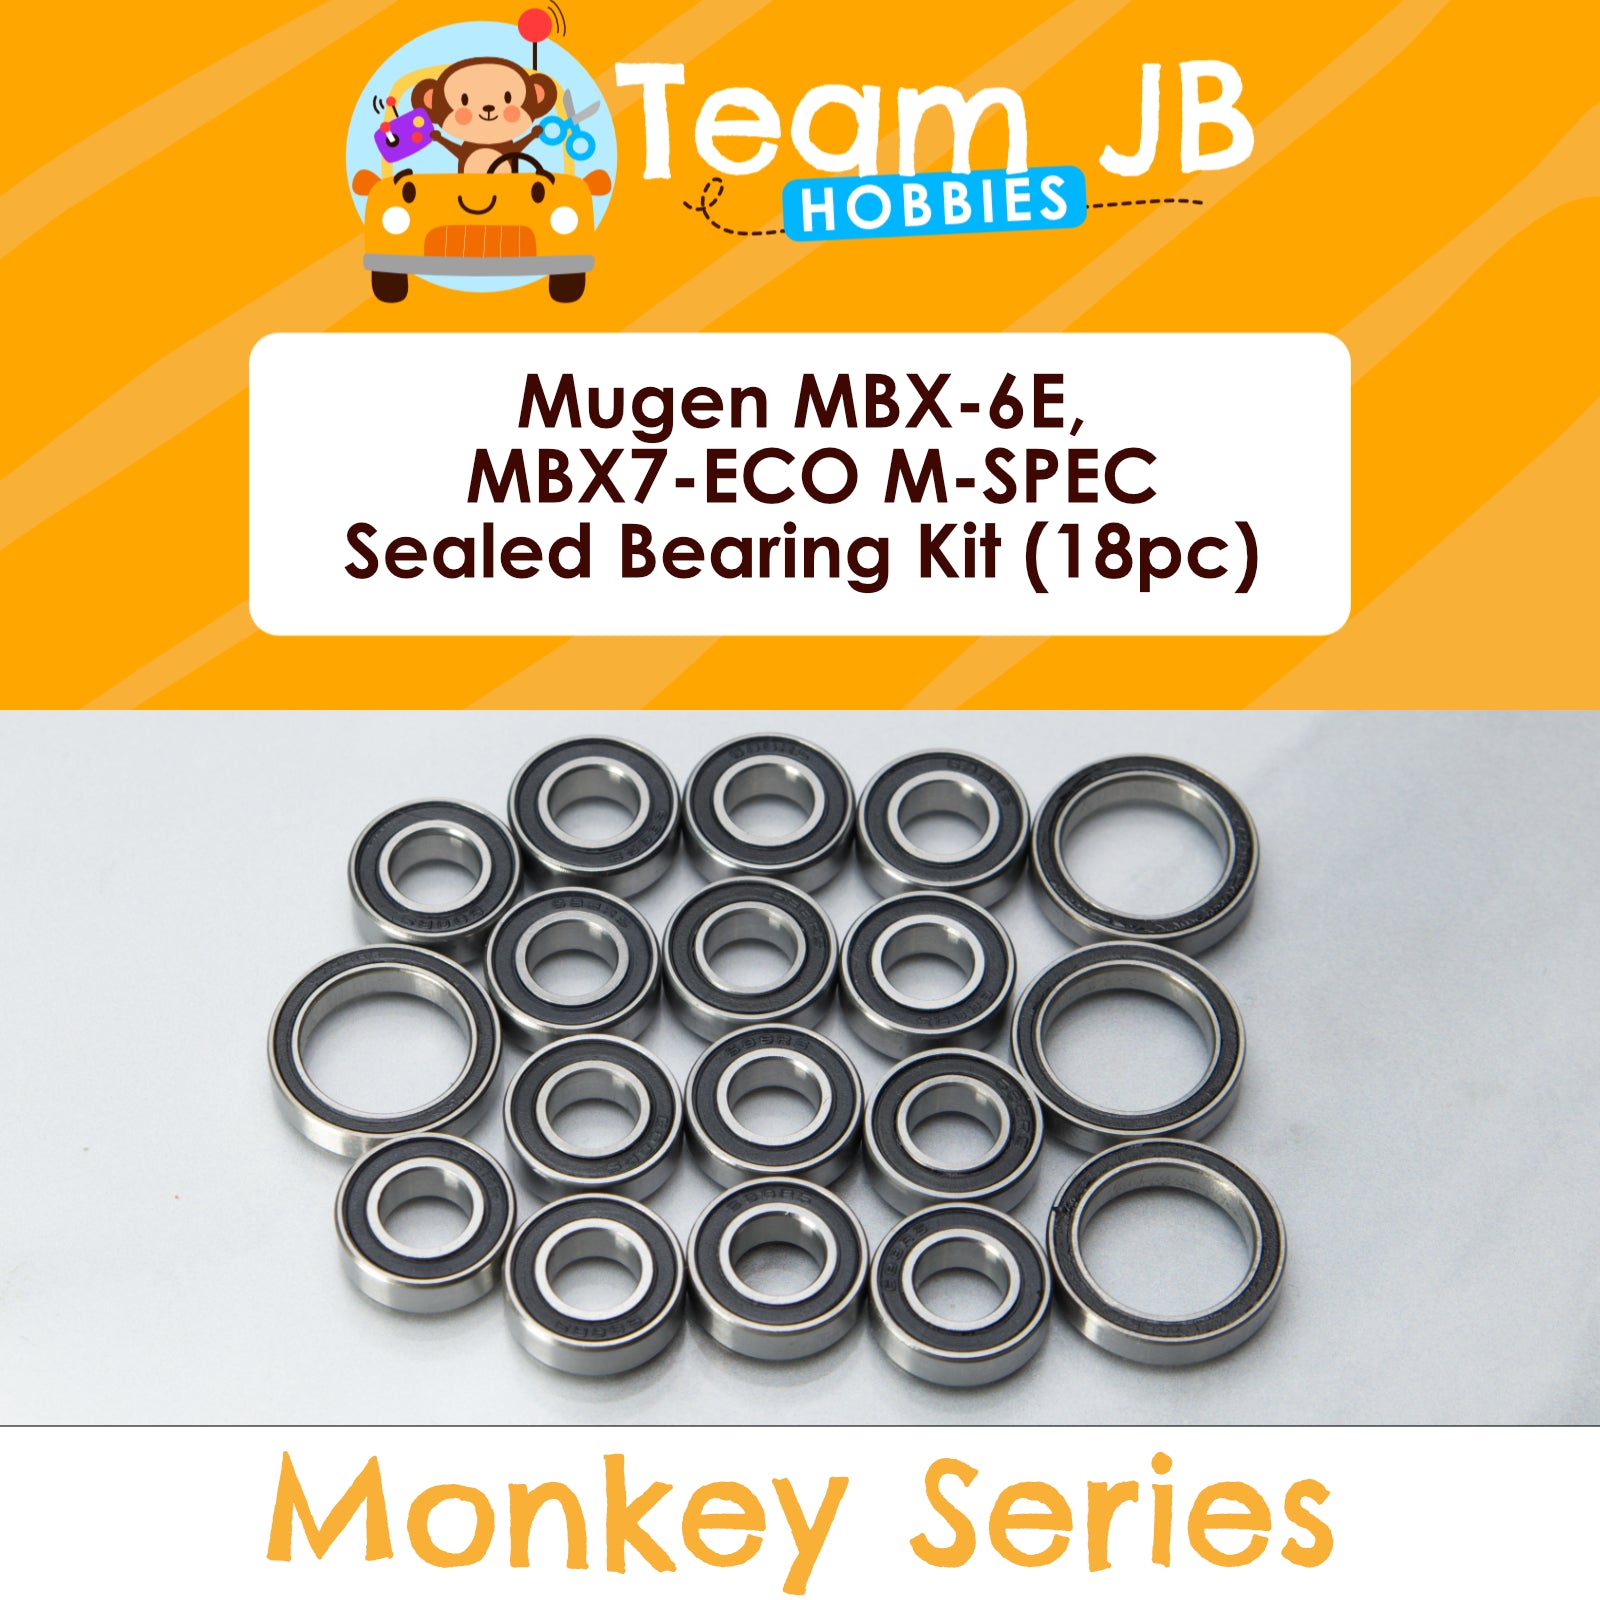 Mugen MBX-6E, MBX7-ECO M-SPEC - Sealed Bearing Kit